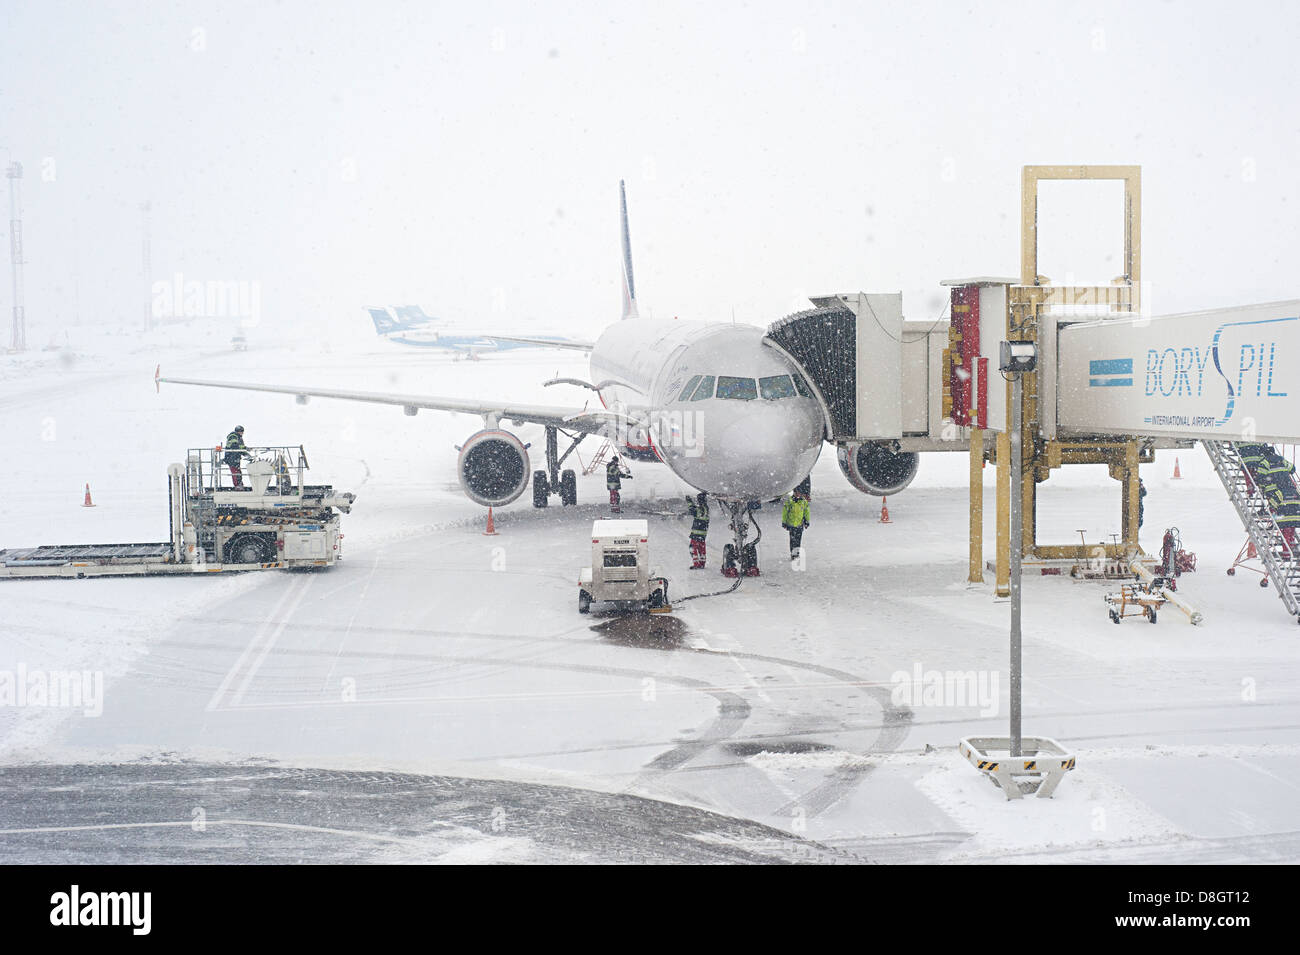 Los trabajadores preparando un avión para volar durante la nevada Foto de stock